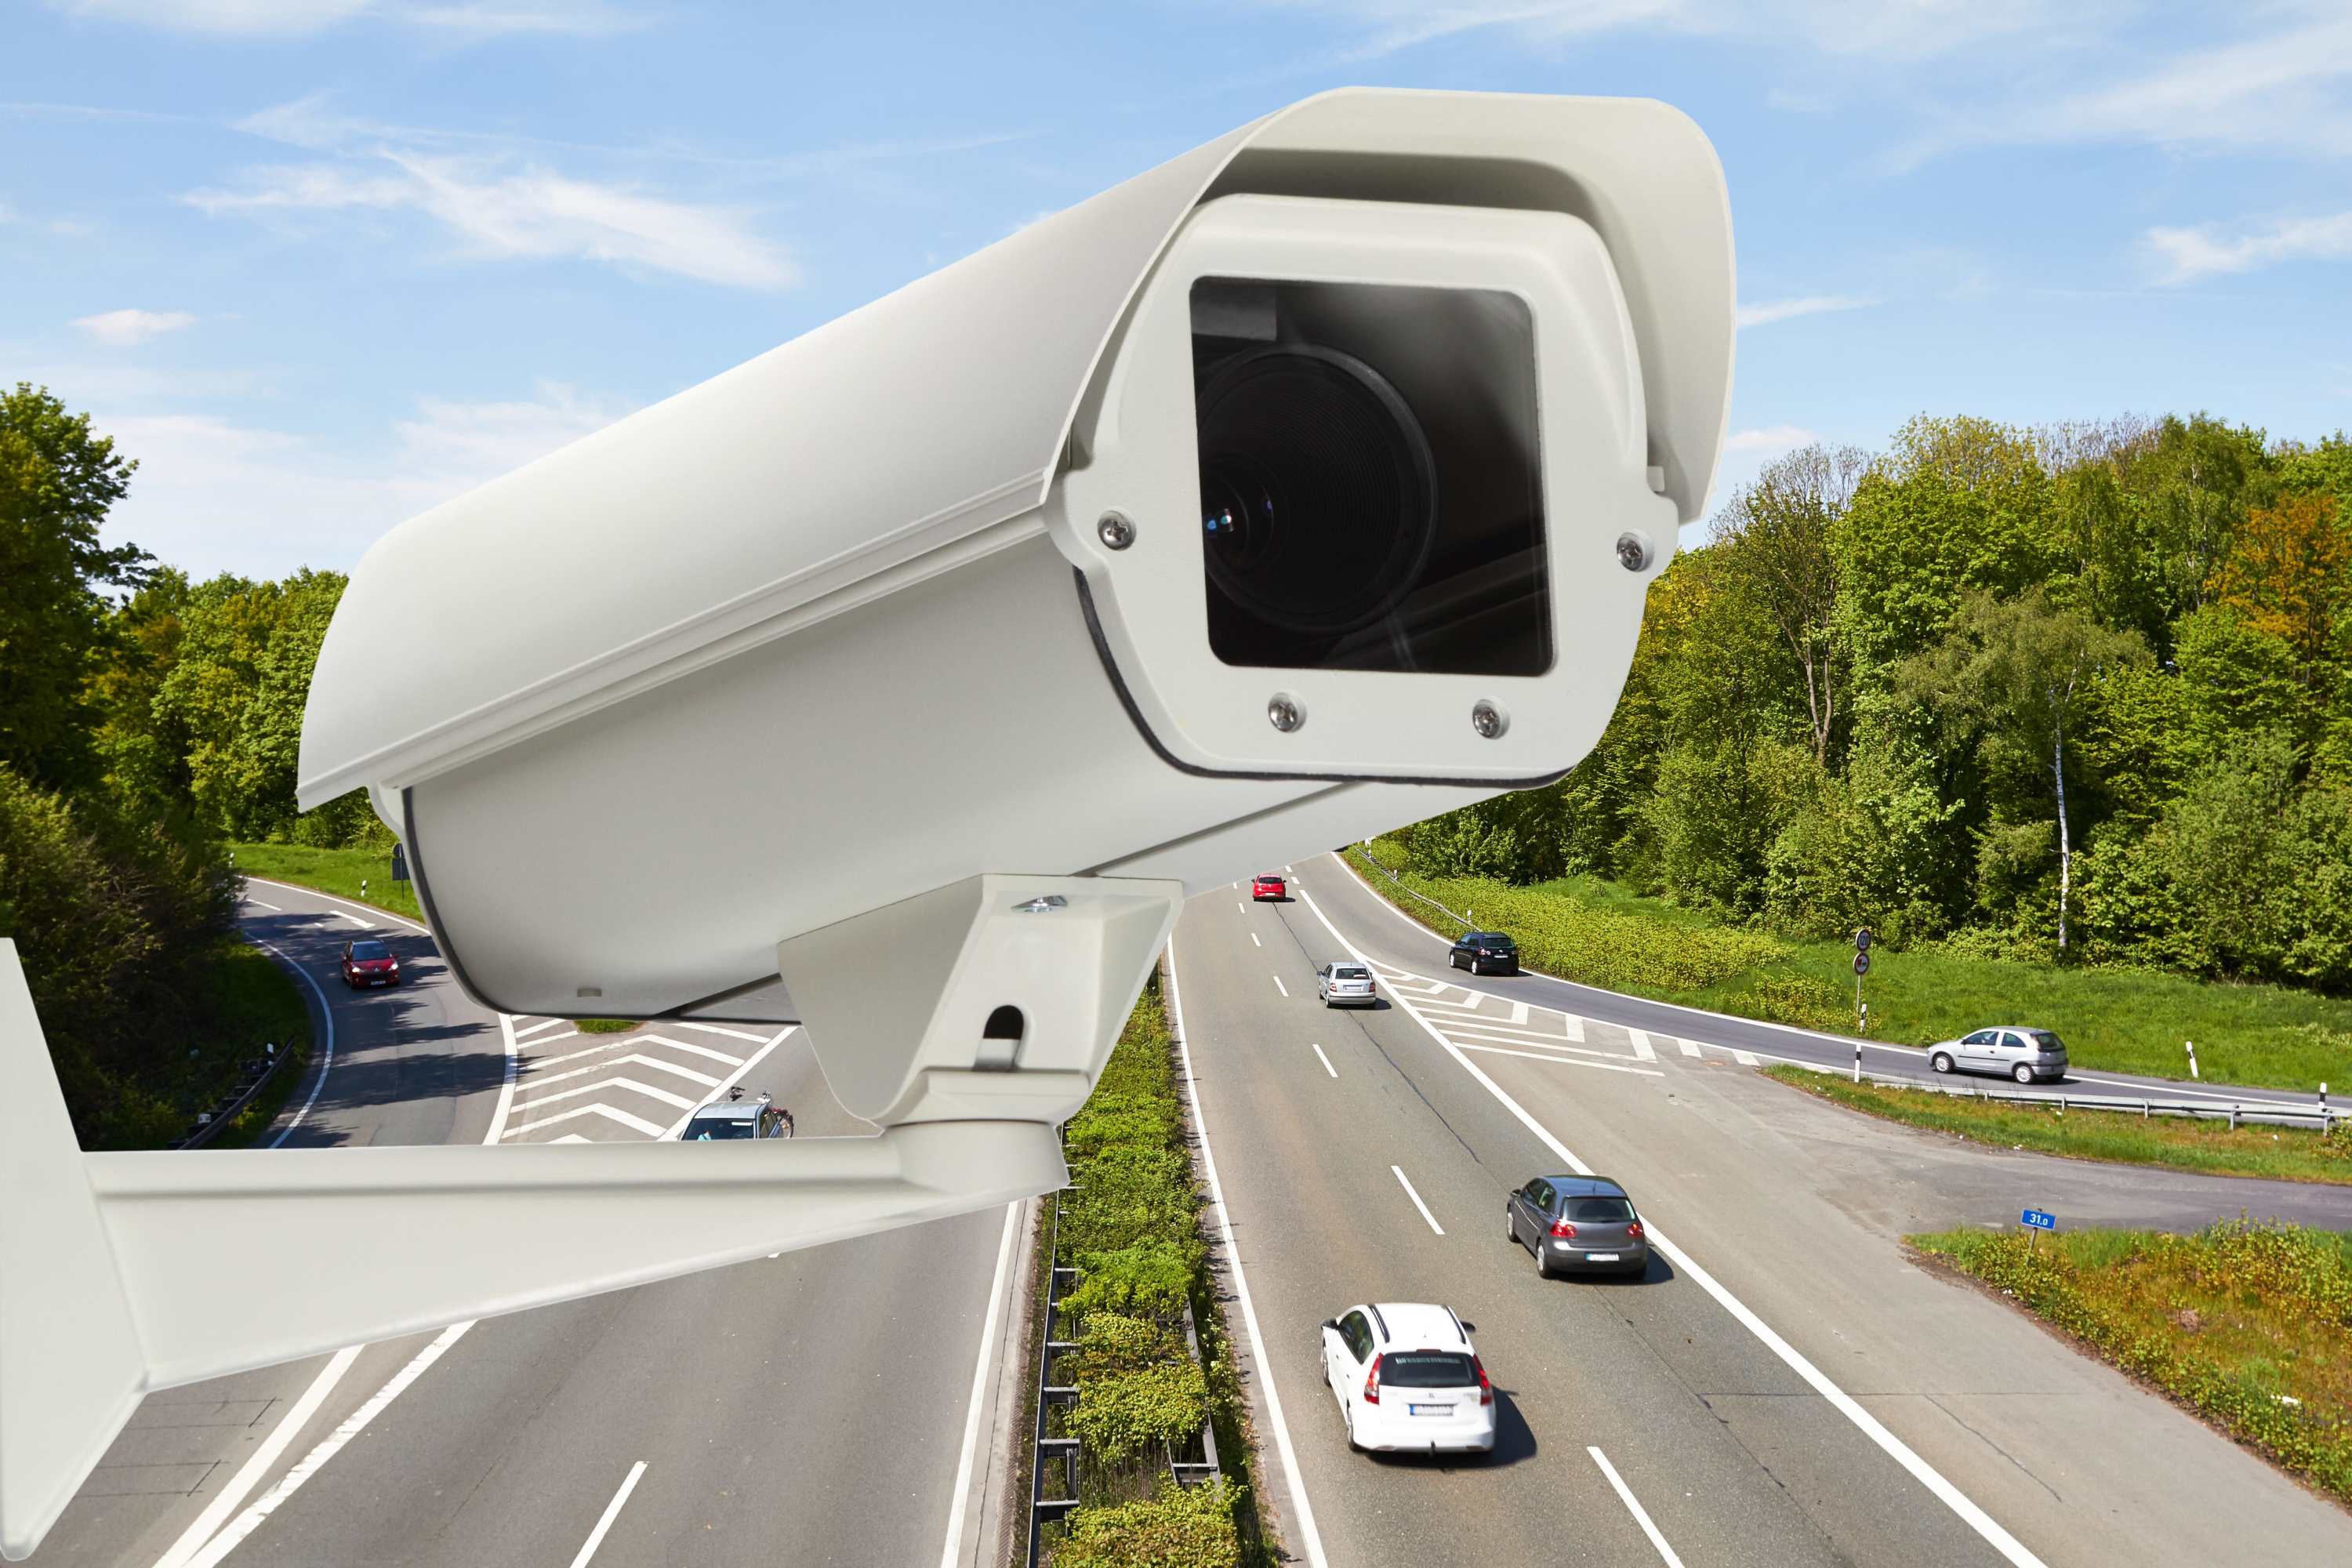 Autonomous webcam solutions